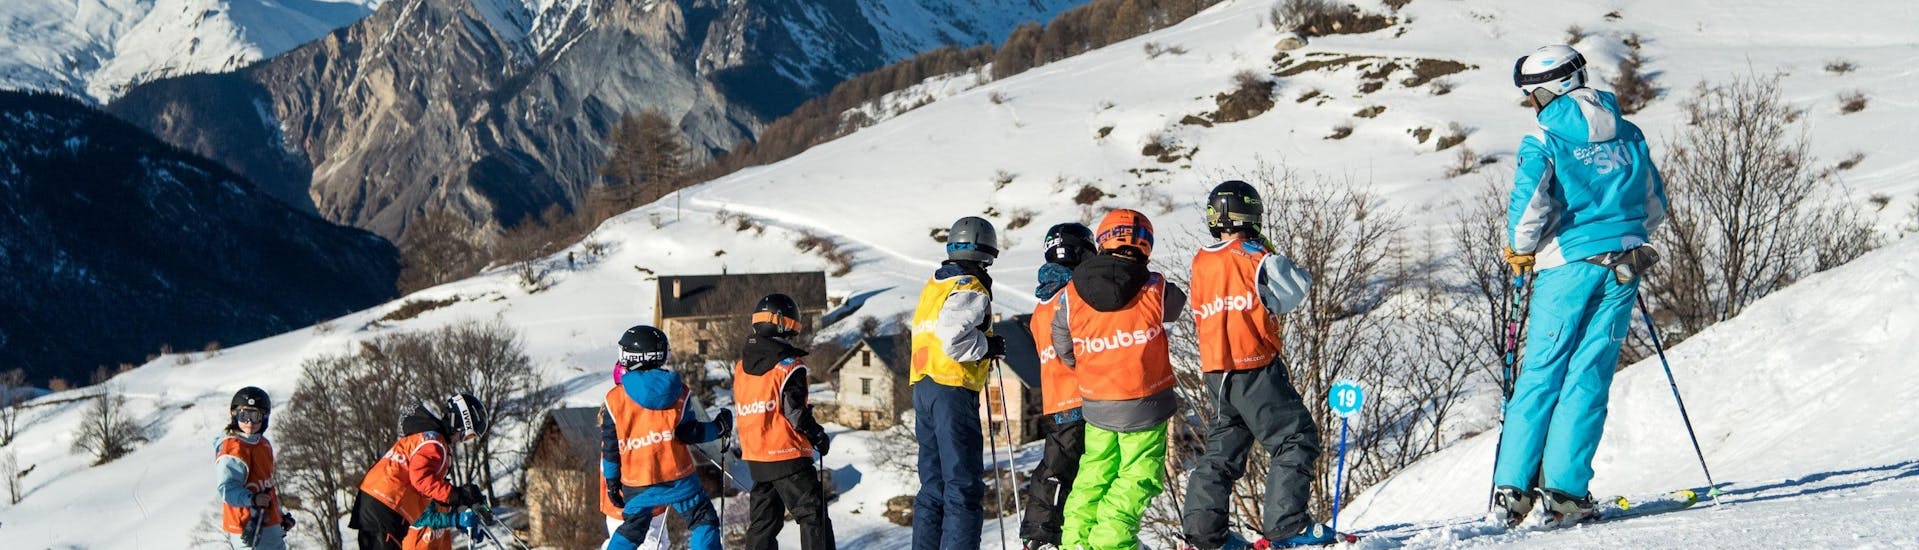 Skilessen voor kinderen vanaf 8 jaar - beginners.